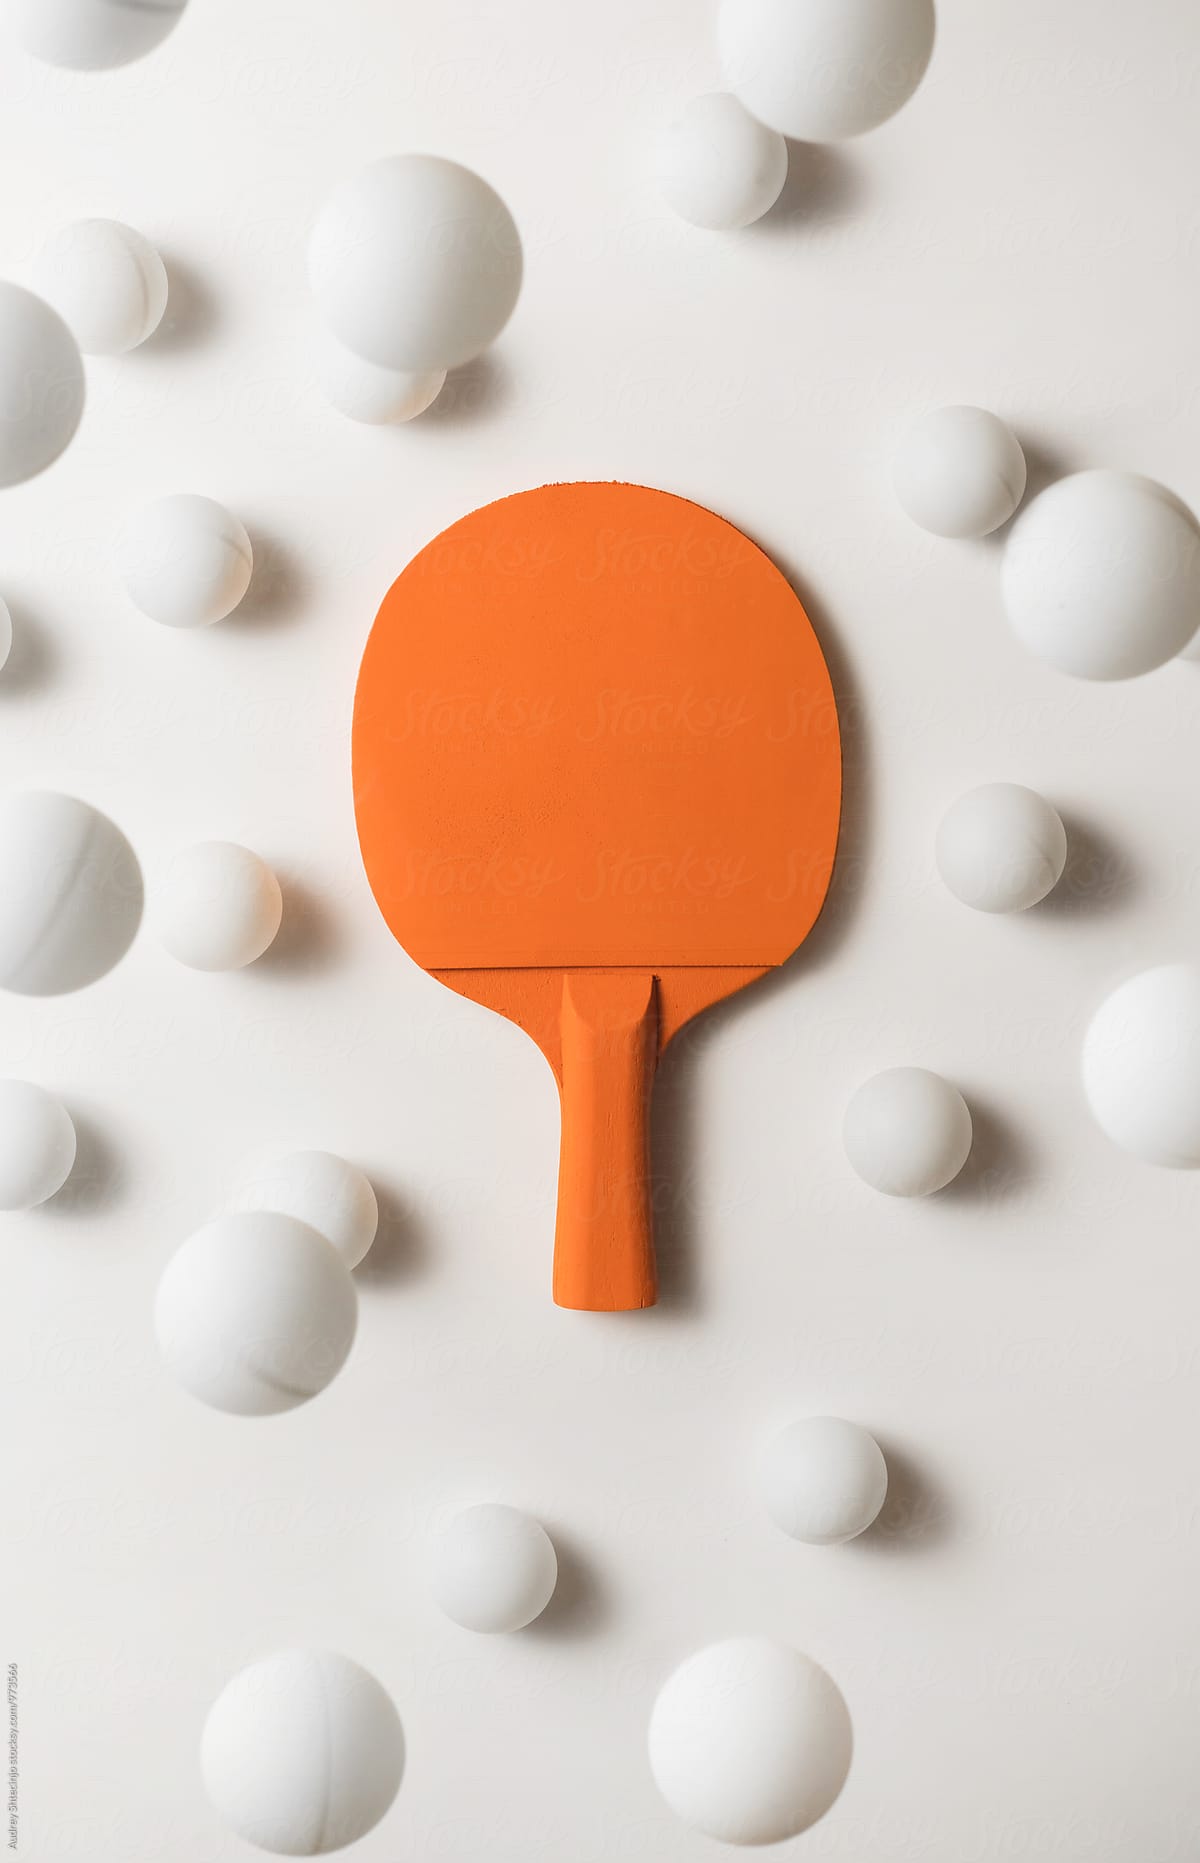 Orange pIng pong racket and white balls flying